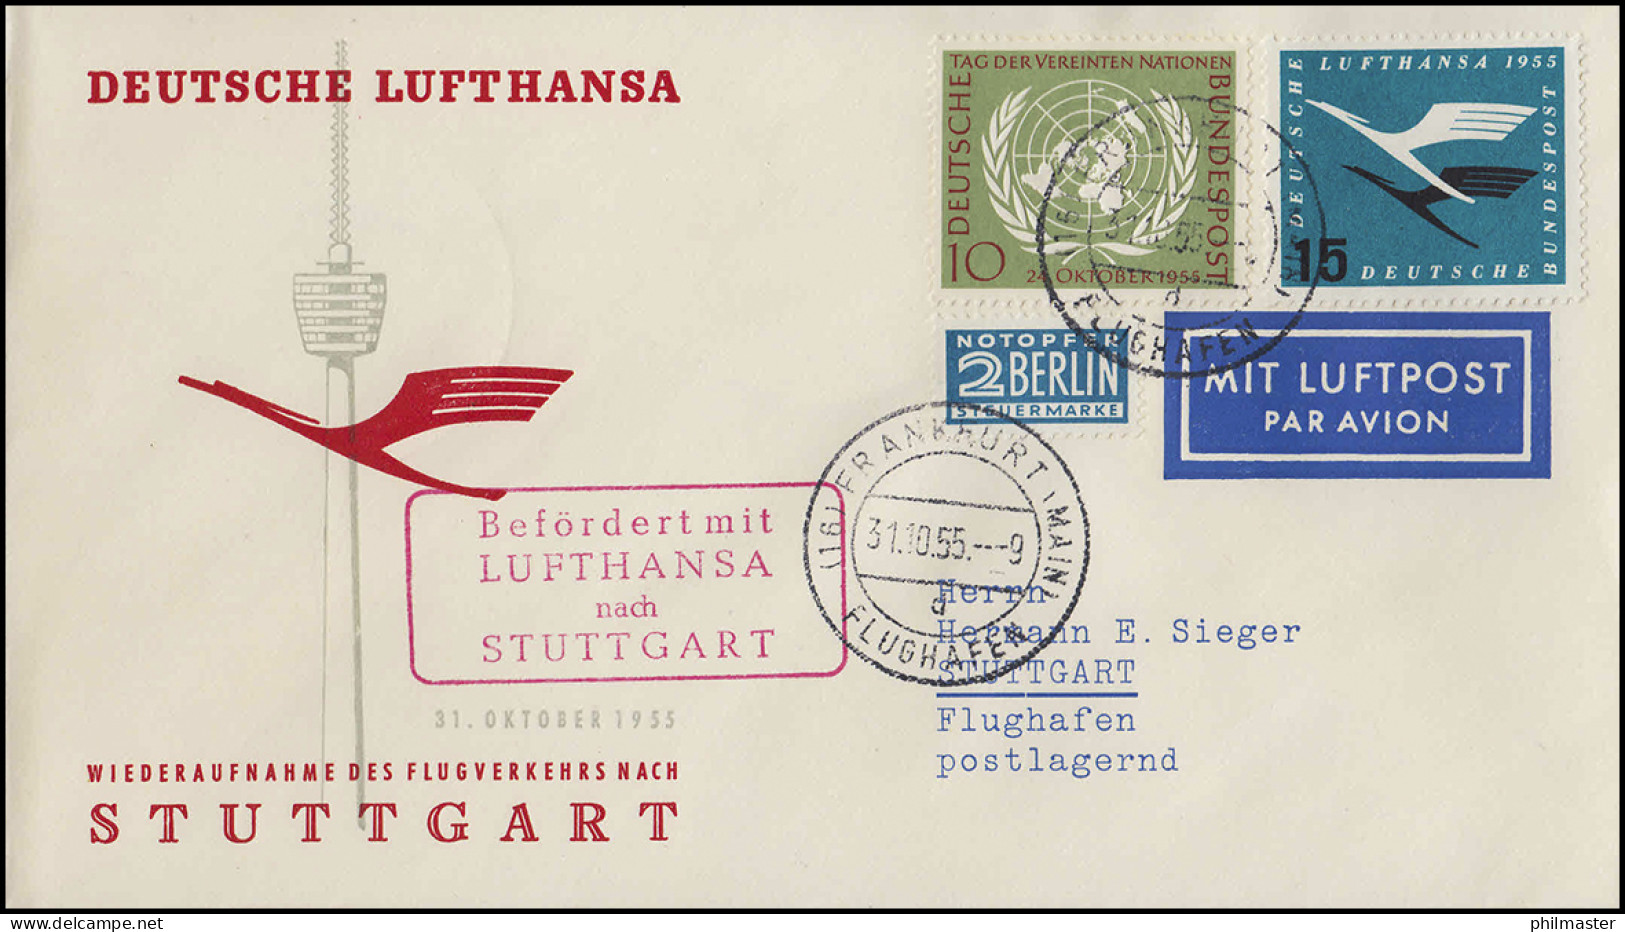 Luftpost Lufthansa Wiederaufnahme Inland, Frankfurt Main/ Stuttgart 31.10.1955 - Premiers Vols